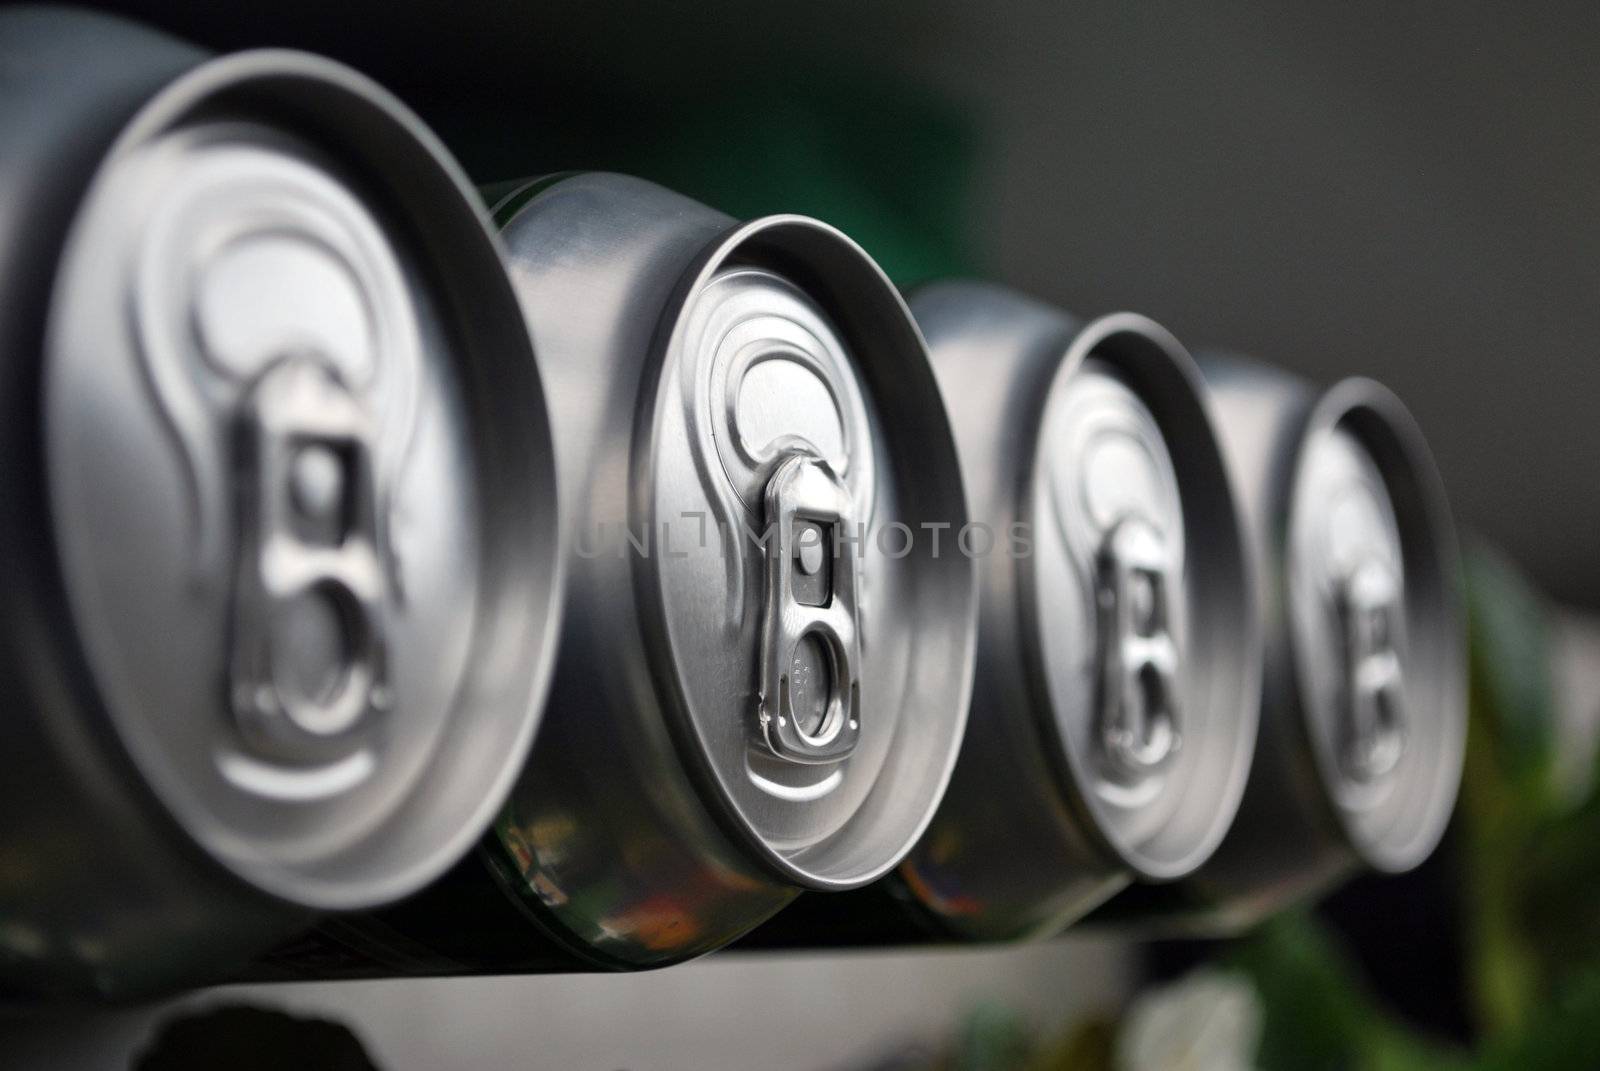 Top view of arranged metallic beer cans